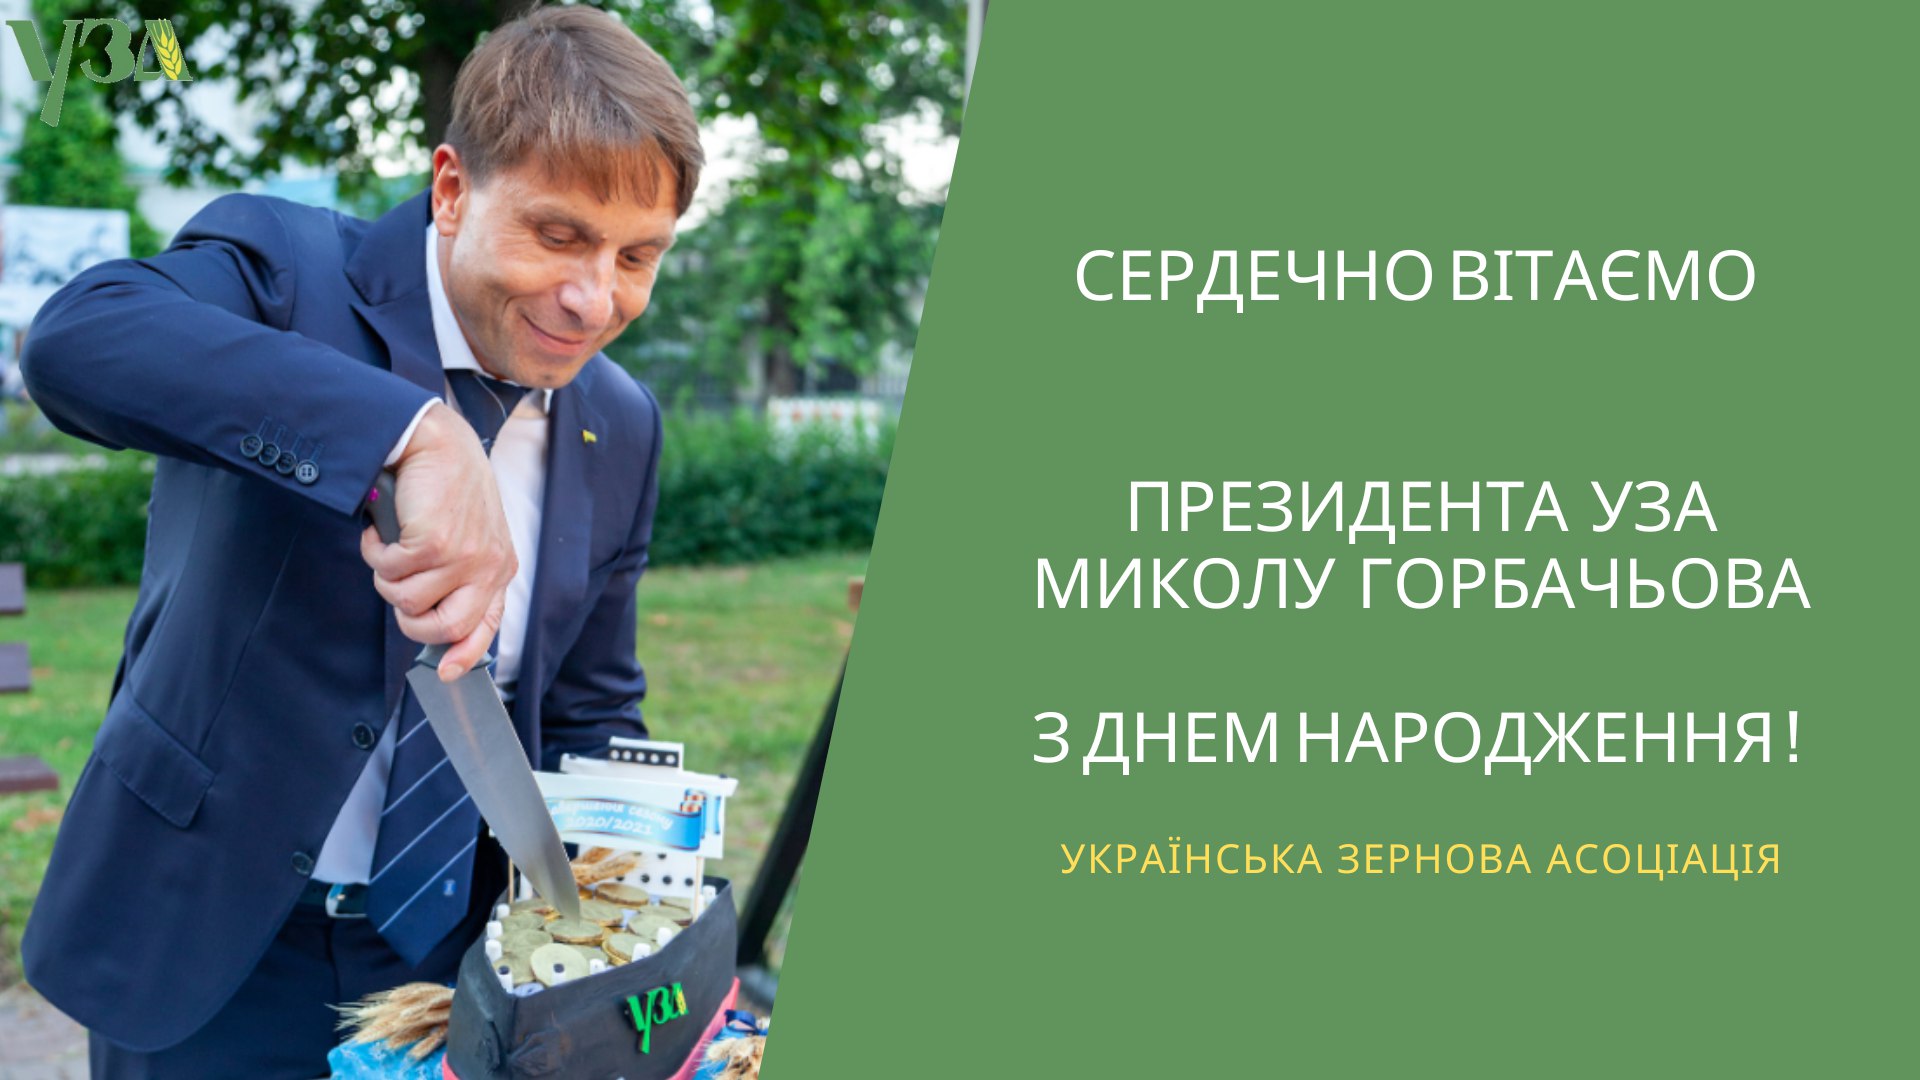 Щиро вітаємо Президента УЗА Миколу Горбачьова з днем народження!